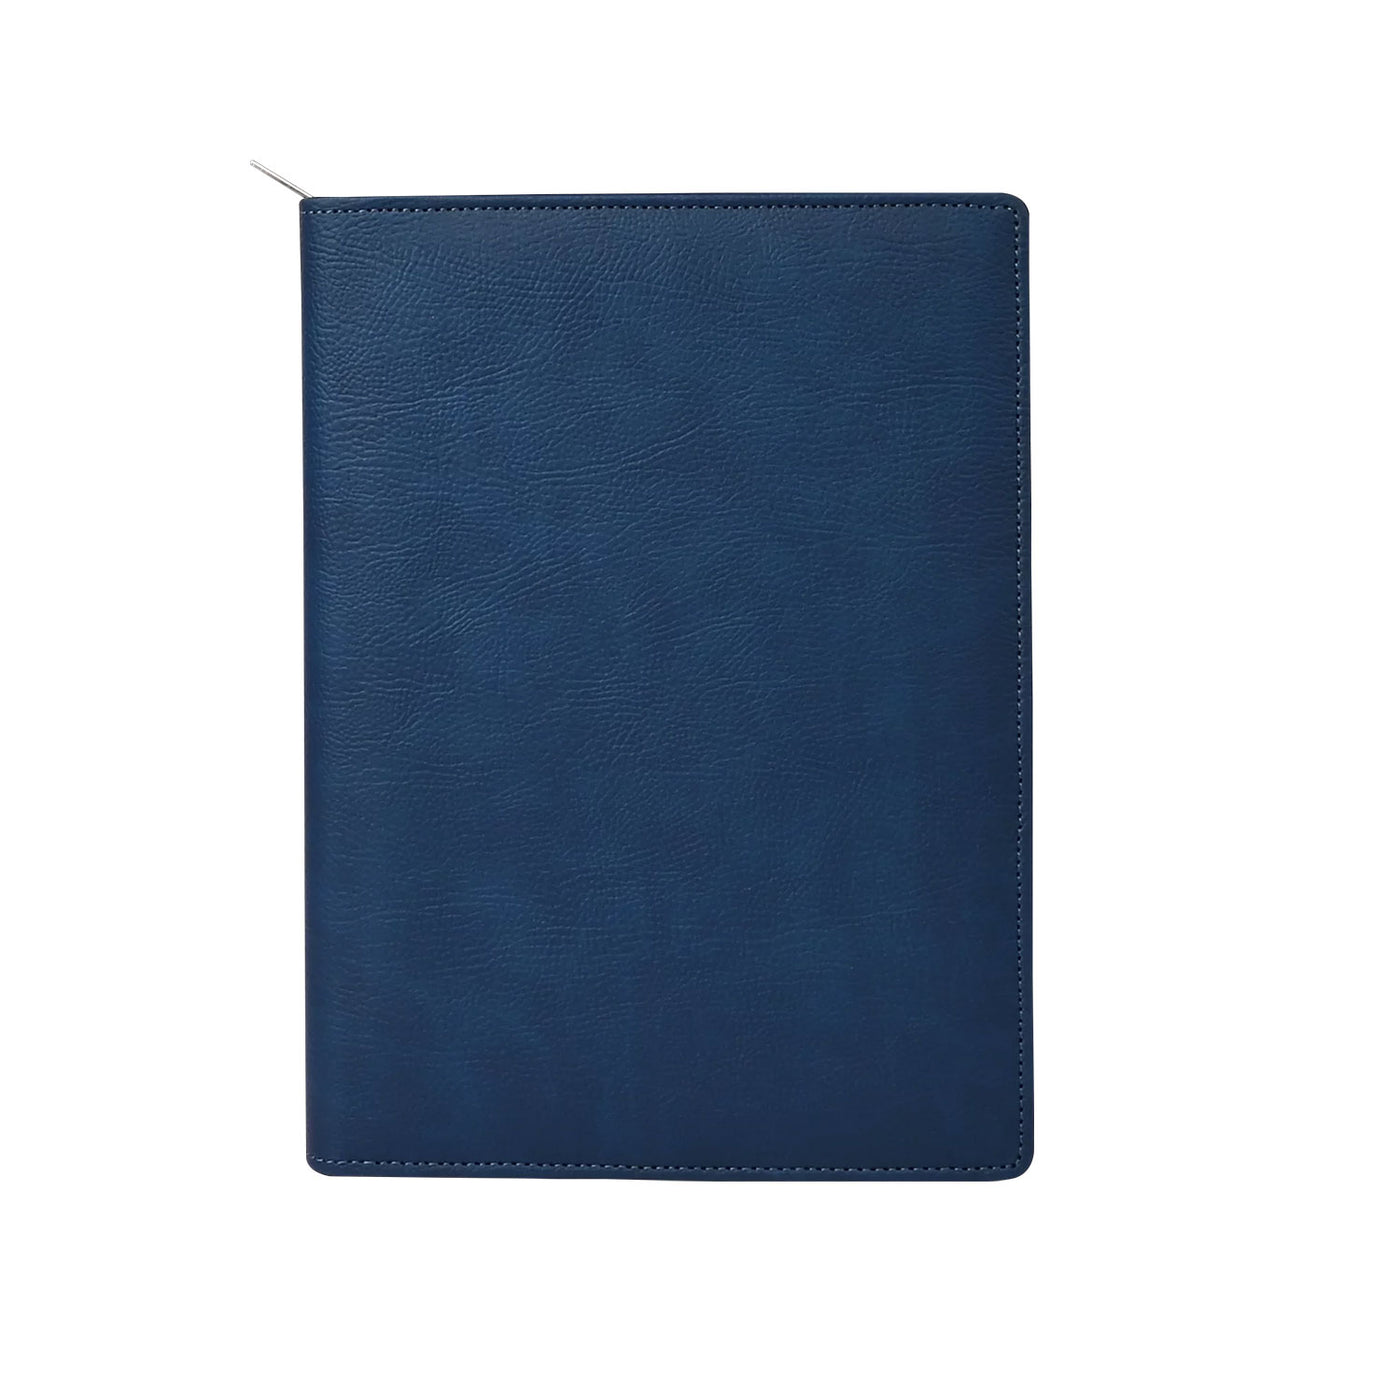 Scholar Vivant Folder Blue Notebook - A5 Ruled 1